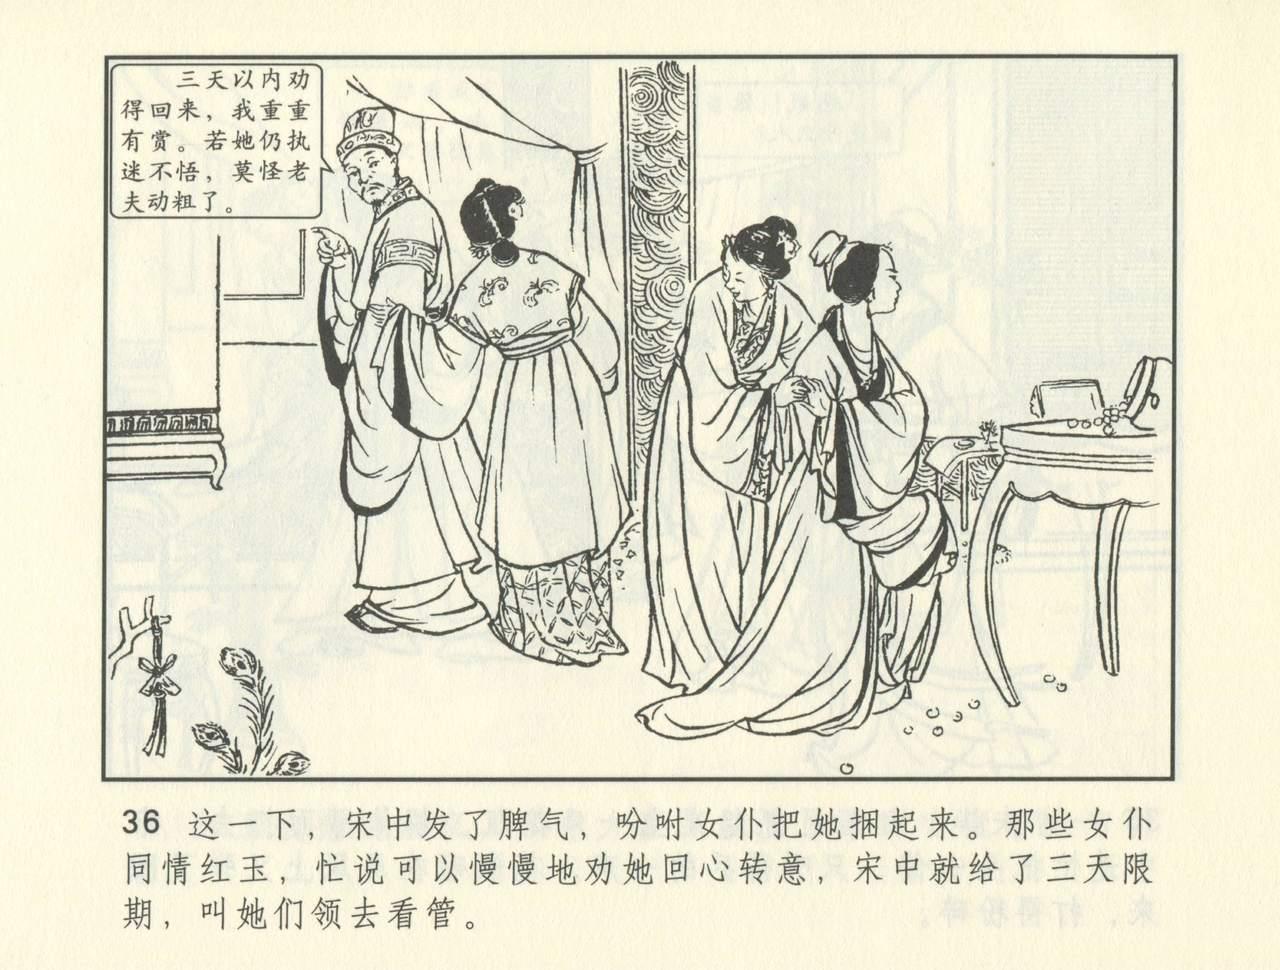 聊斋志异 张玮等绘 天津人民美术出版社 卷二十一 ~ 三十 376